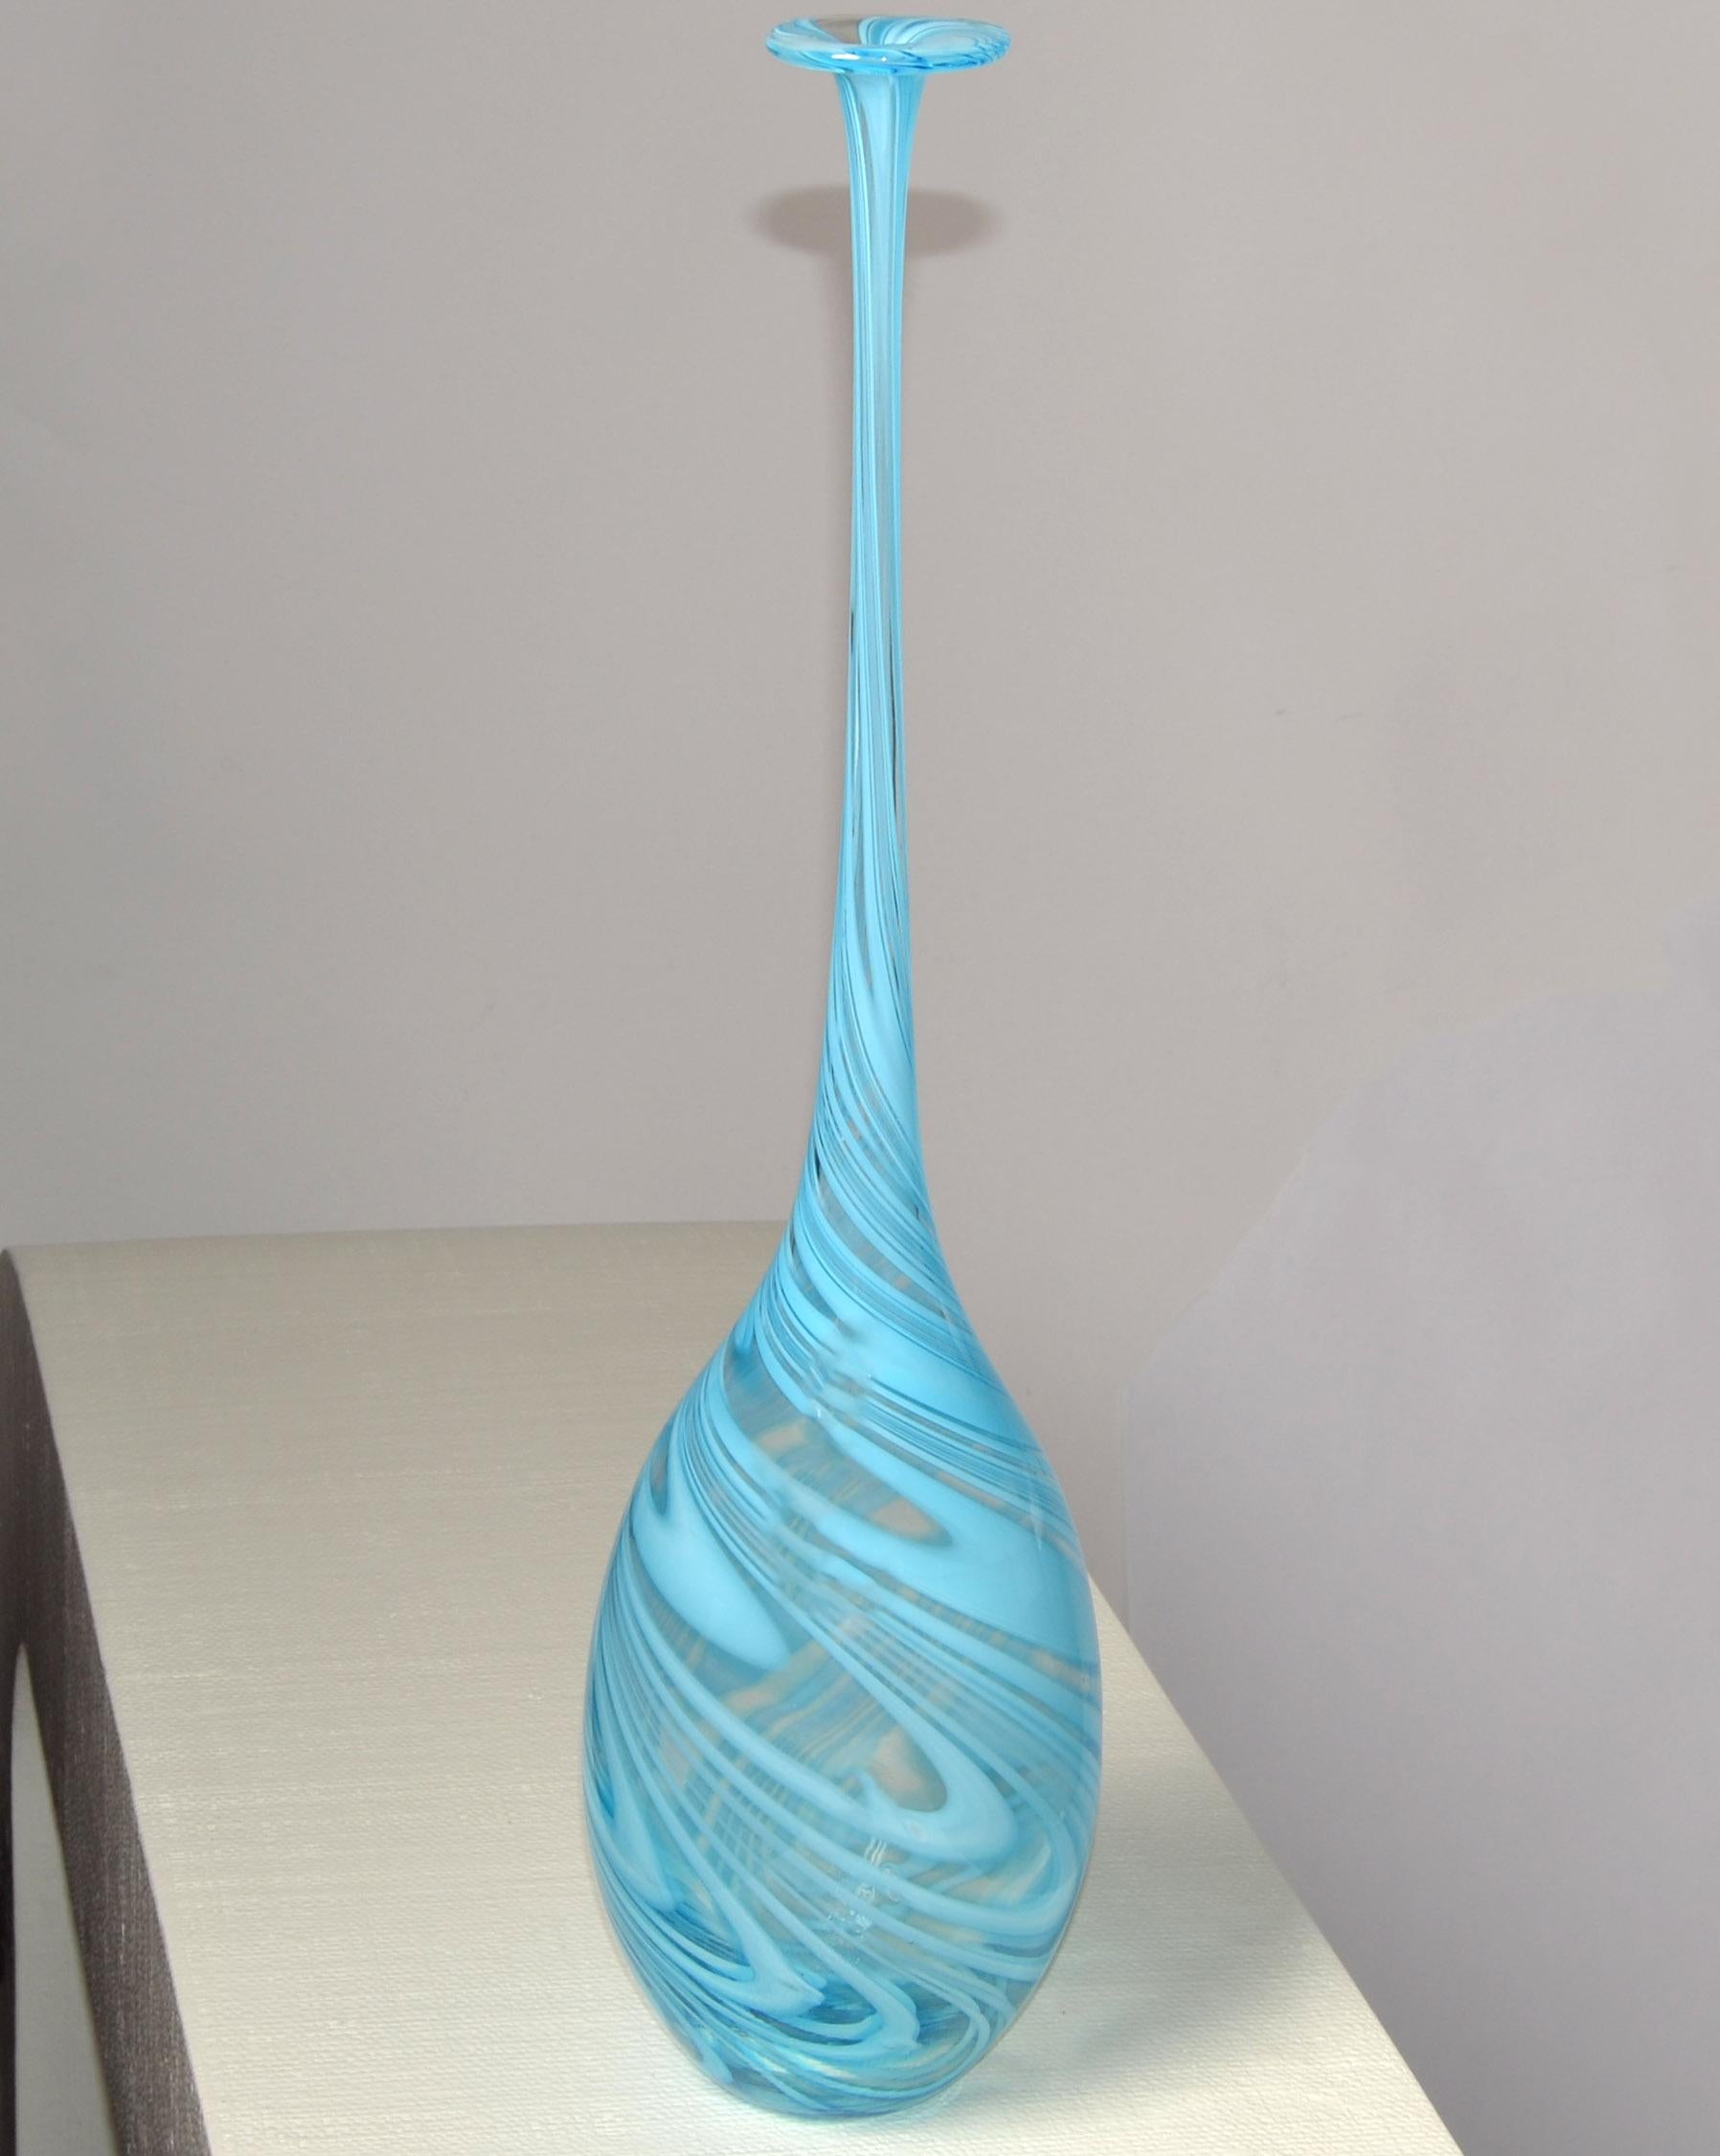 Hohe Mitte des Jahrhunderts Moderne italienische geblasen Murano Knospe Vase in babyblau wirbelnden Design zugeschrieben Vetro Artistico.
Das Gefäß hat einen sehr langen Hals und einen Kern im Teardrop-Stil. Die obere Öffnung sieht aus wie eine